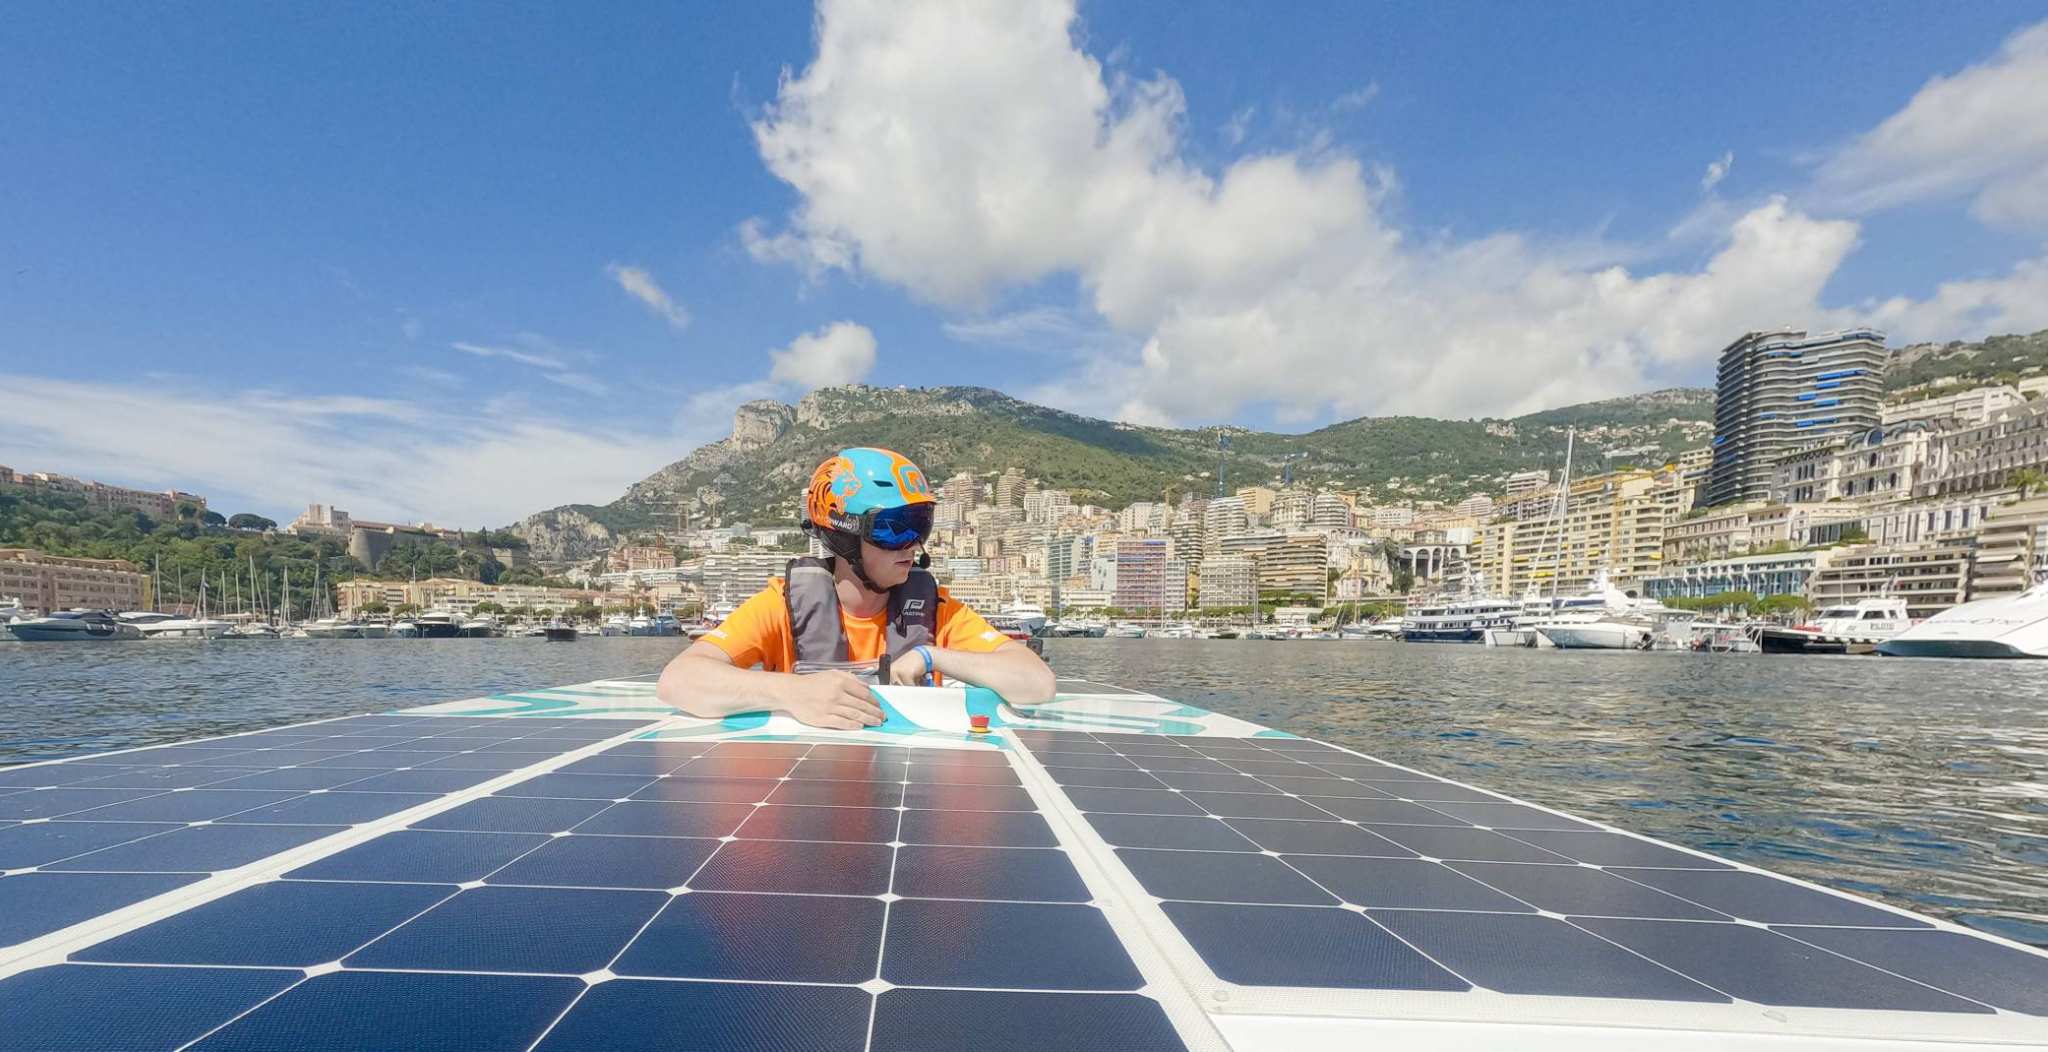 Solarboat in actie tijdens Energy Boat Challenge in Monaco met piloot Mitchel Kraai